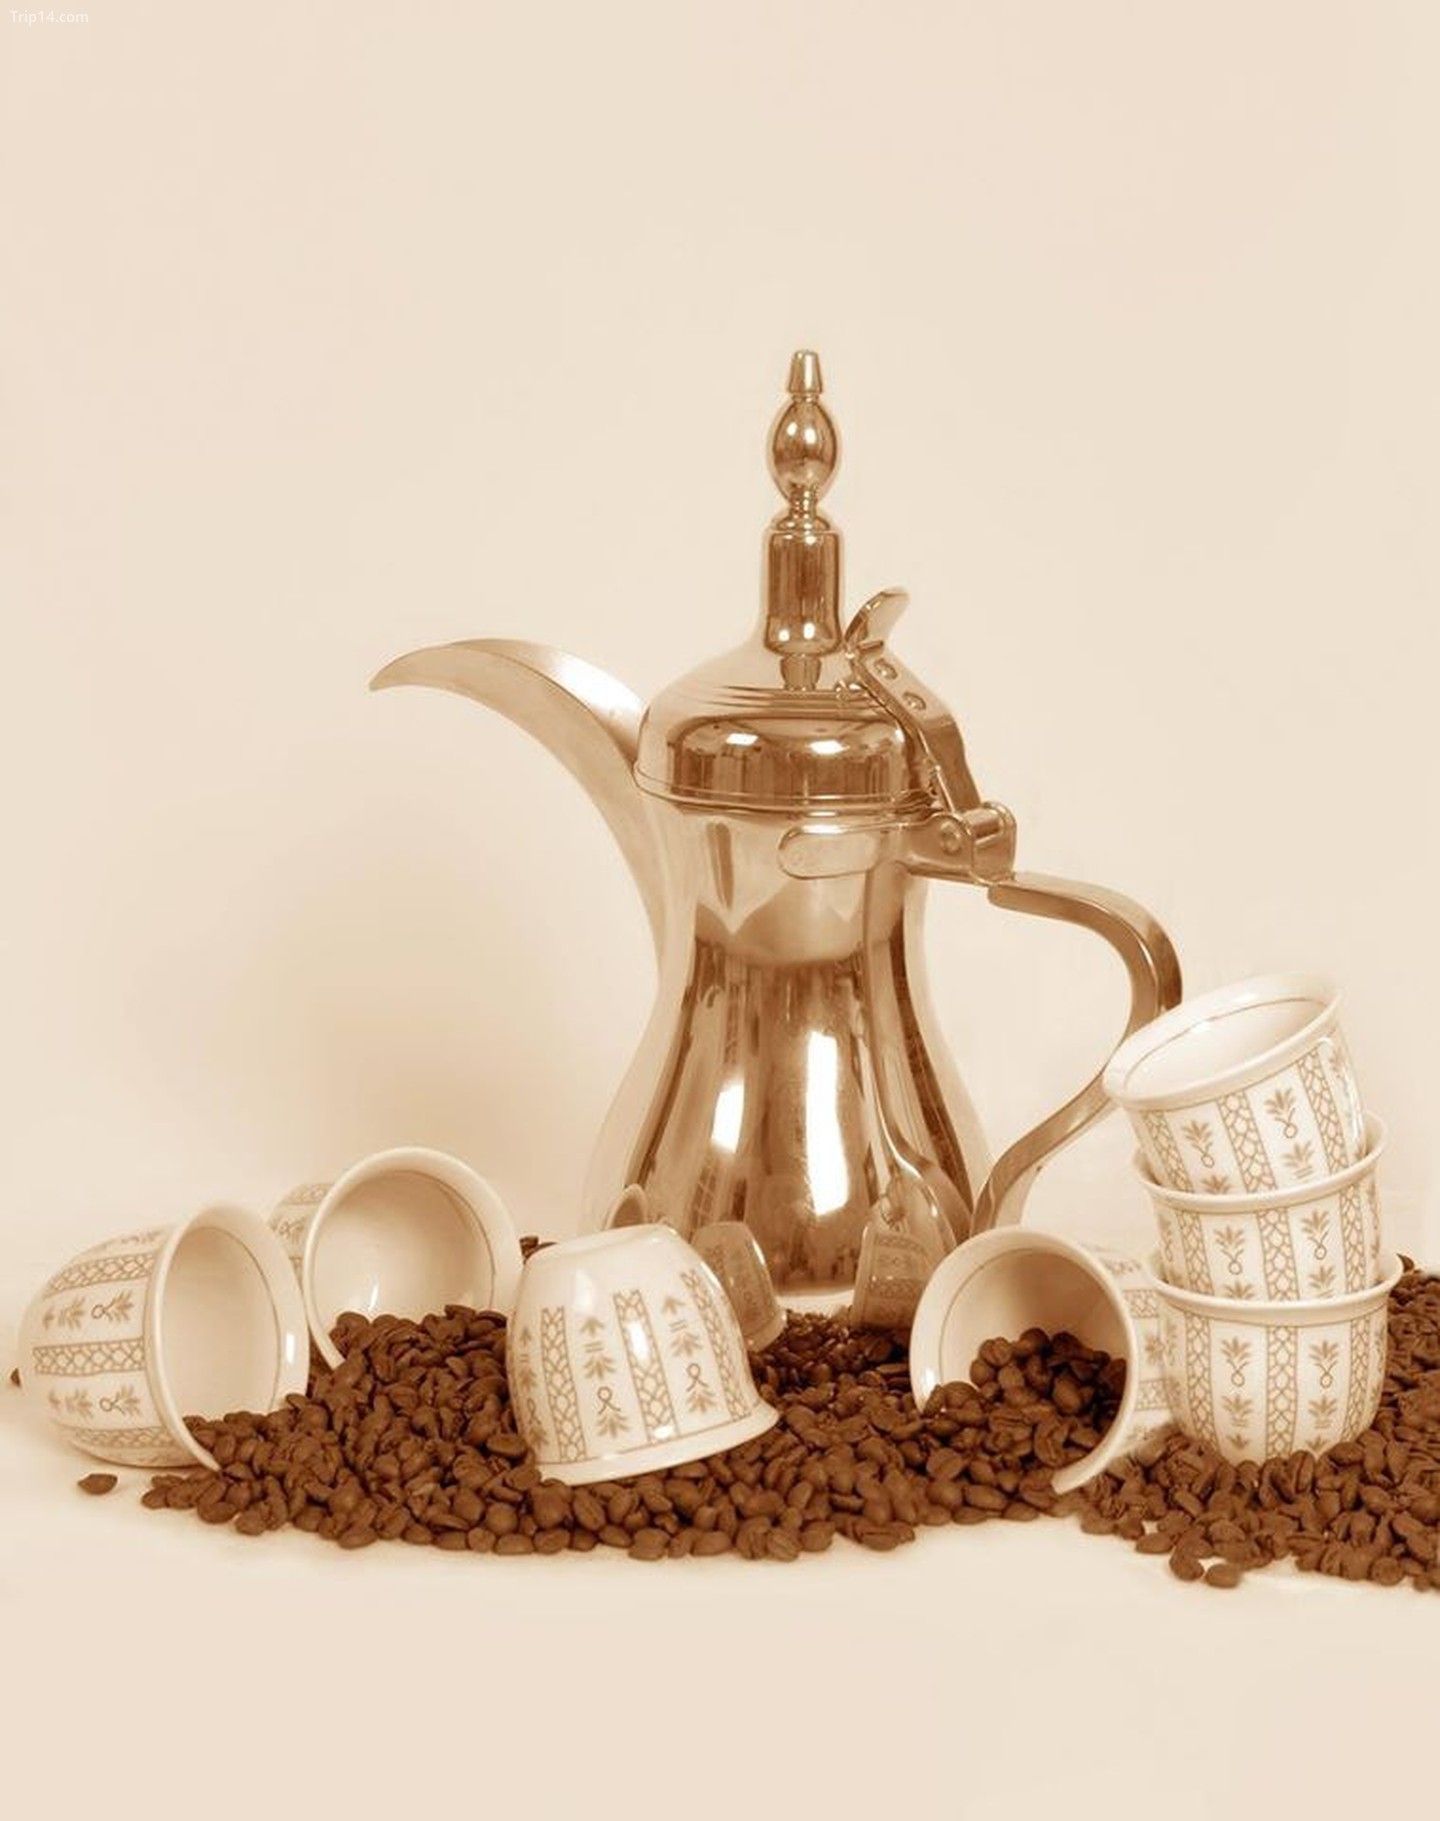 Bình cà phê phong cách Ả Rập